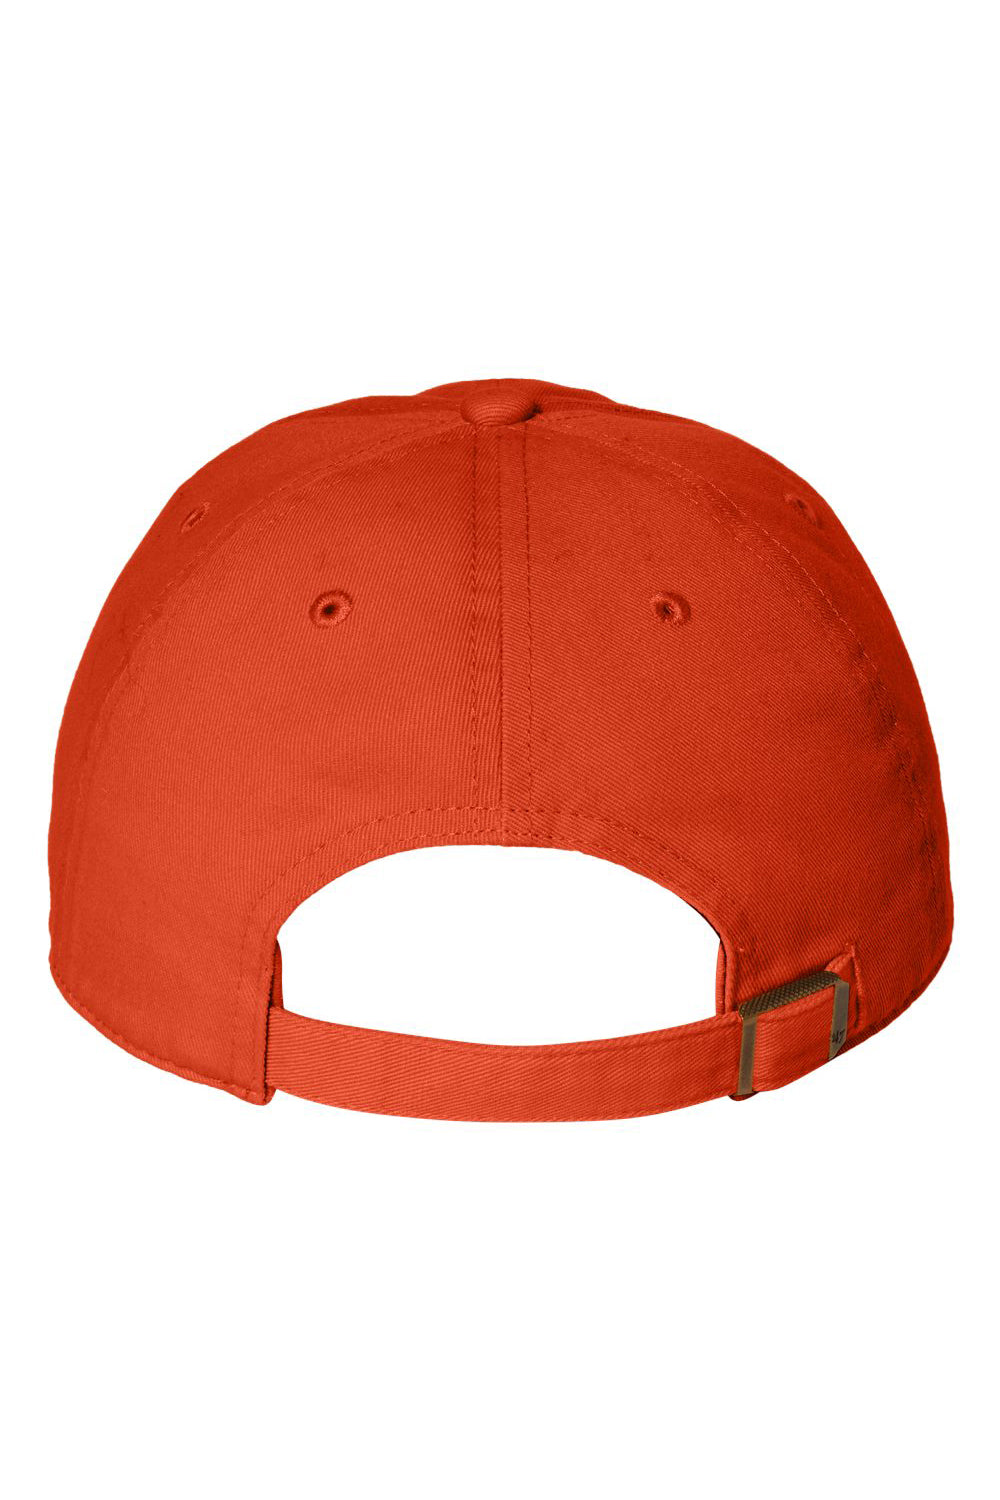 47 Brand 4700 Mens Clean Up Adjustable Hat Orange Flat Back